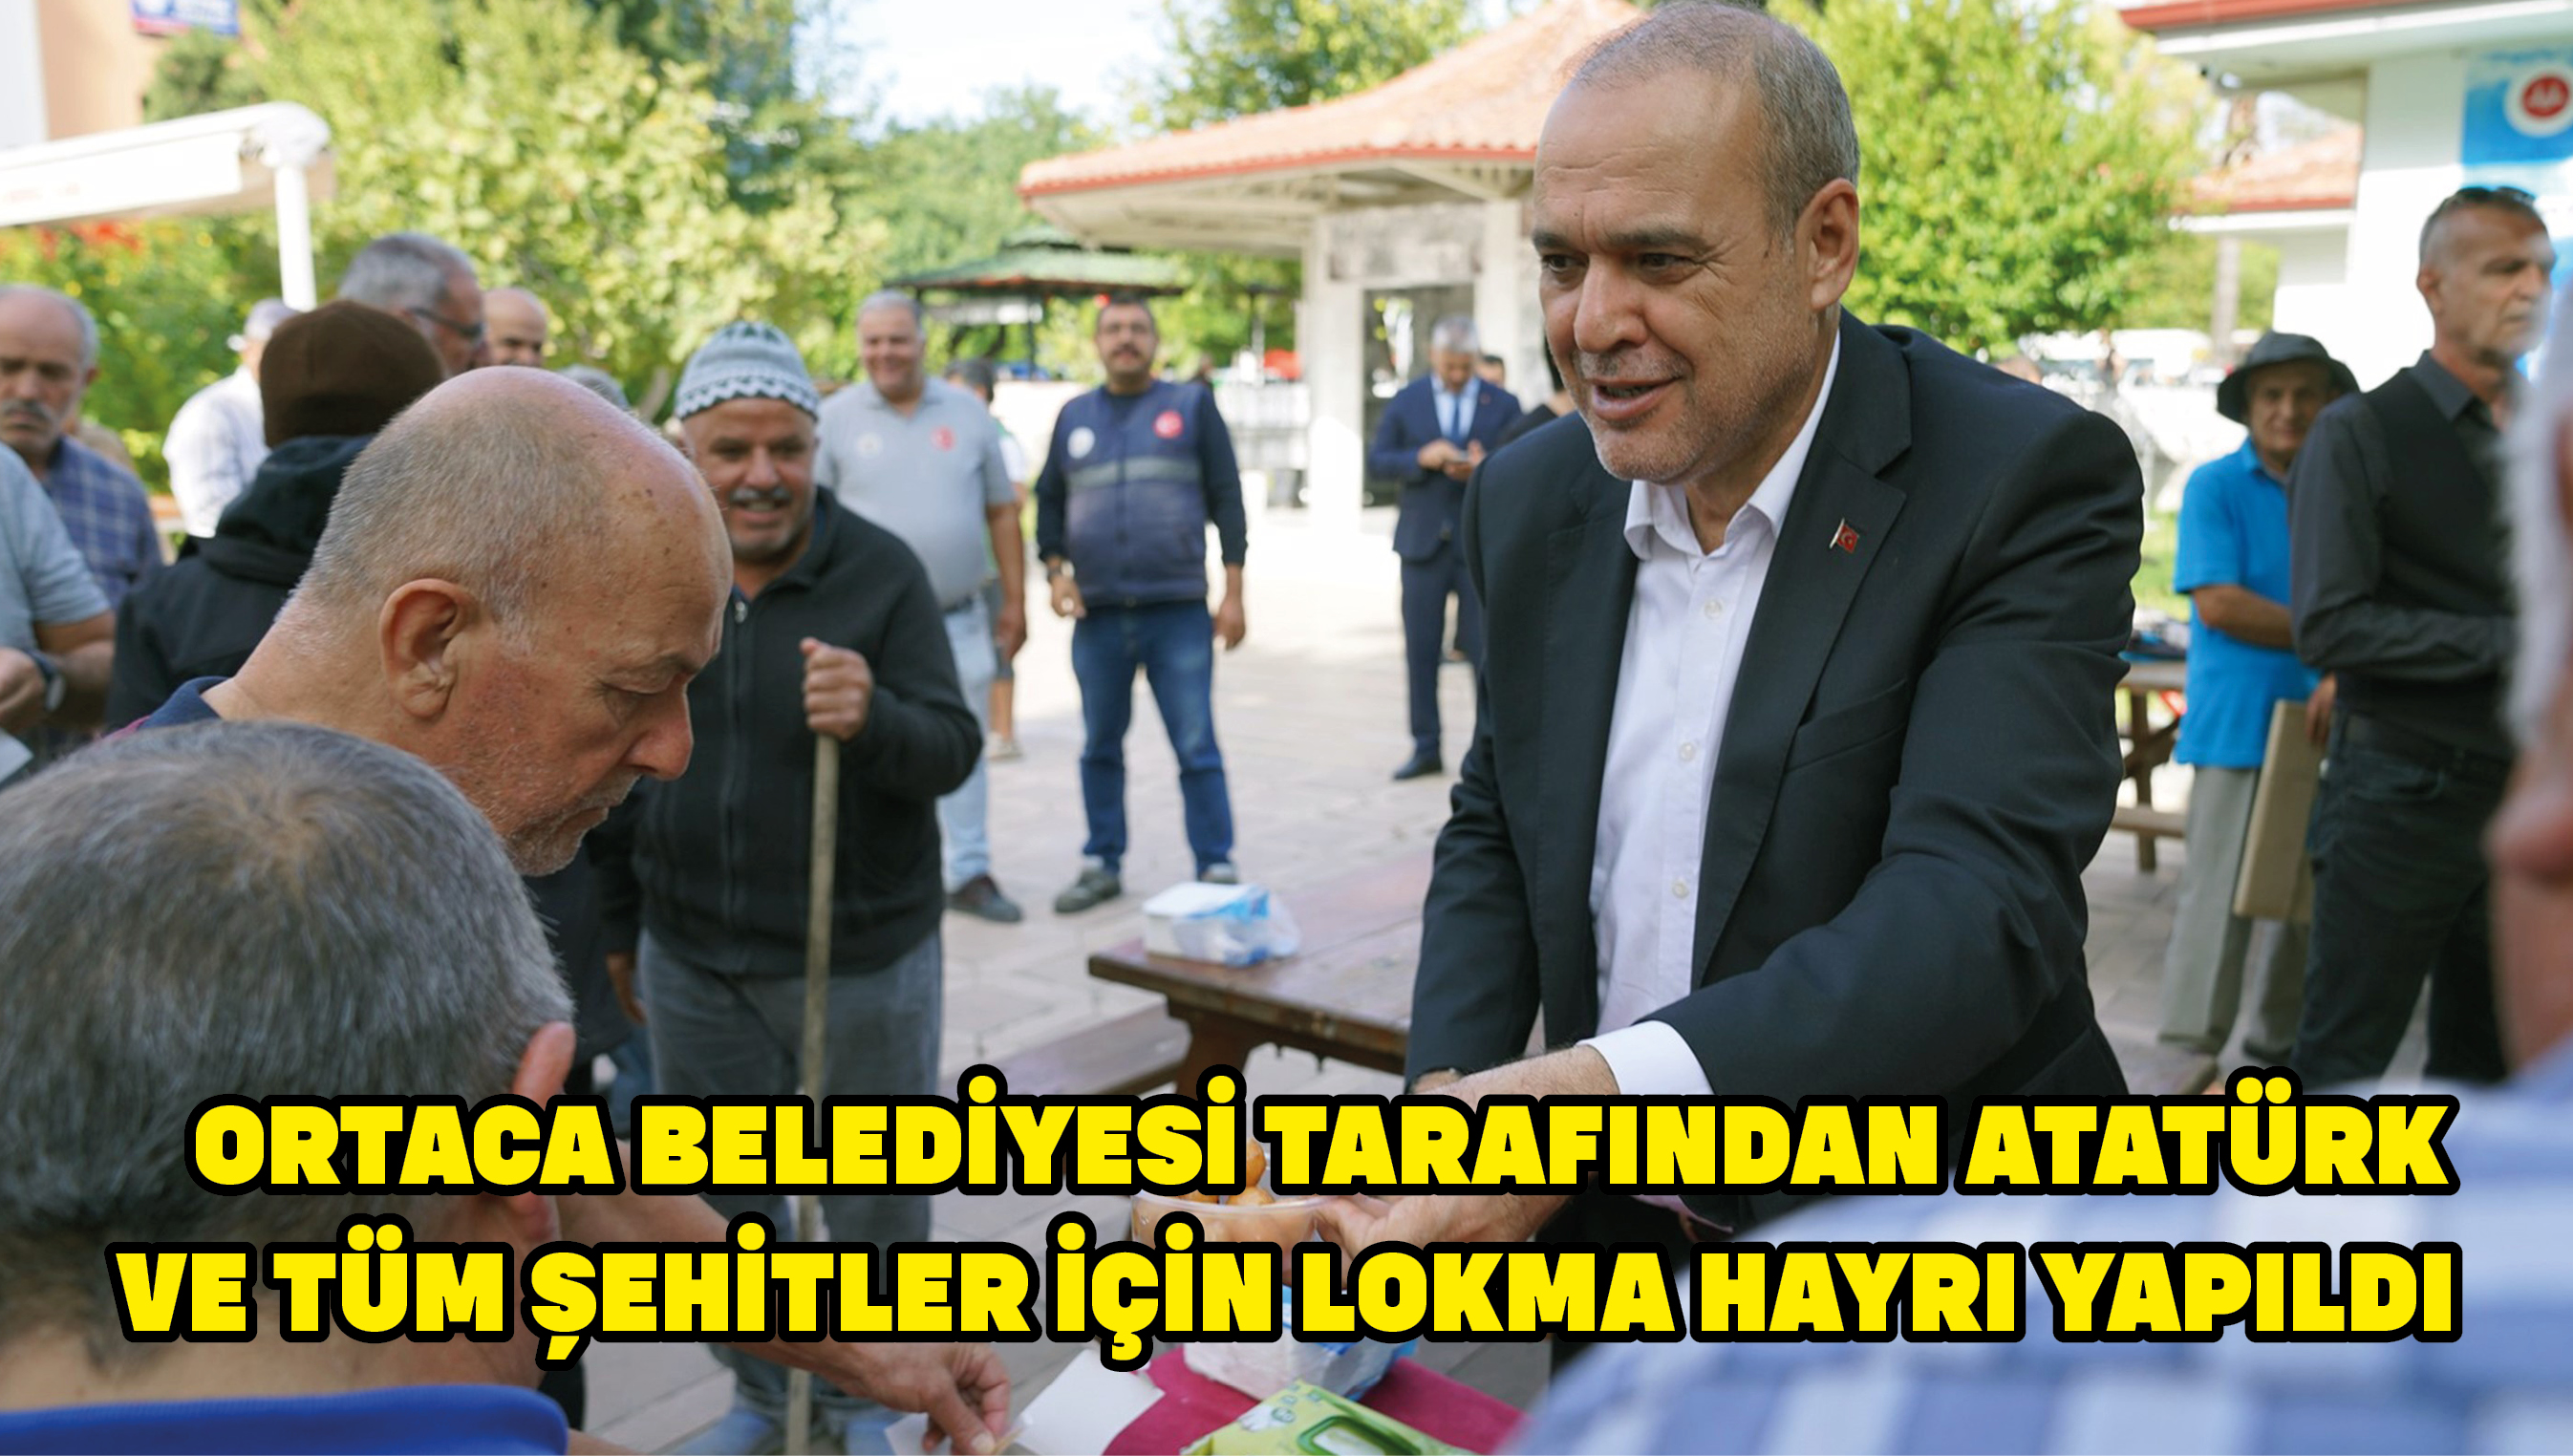 Ortaca Belediyesi tarafından Atatürk ve tüm şehitler için lokma hayrı yapıldı